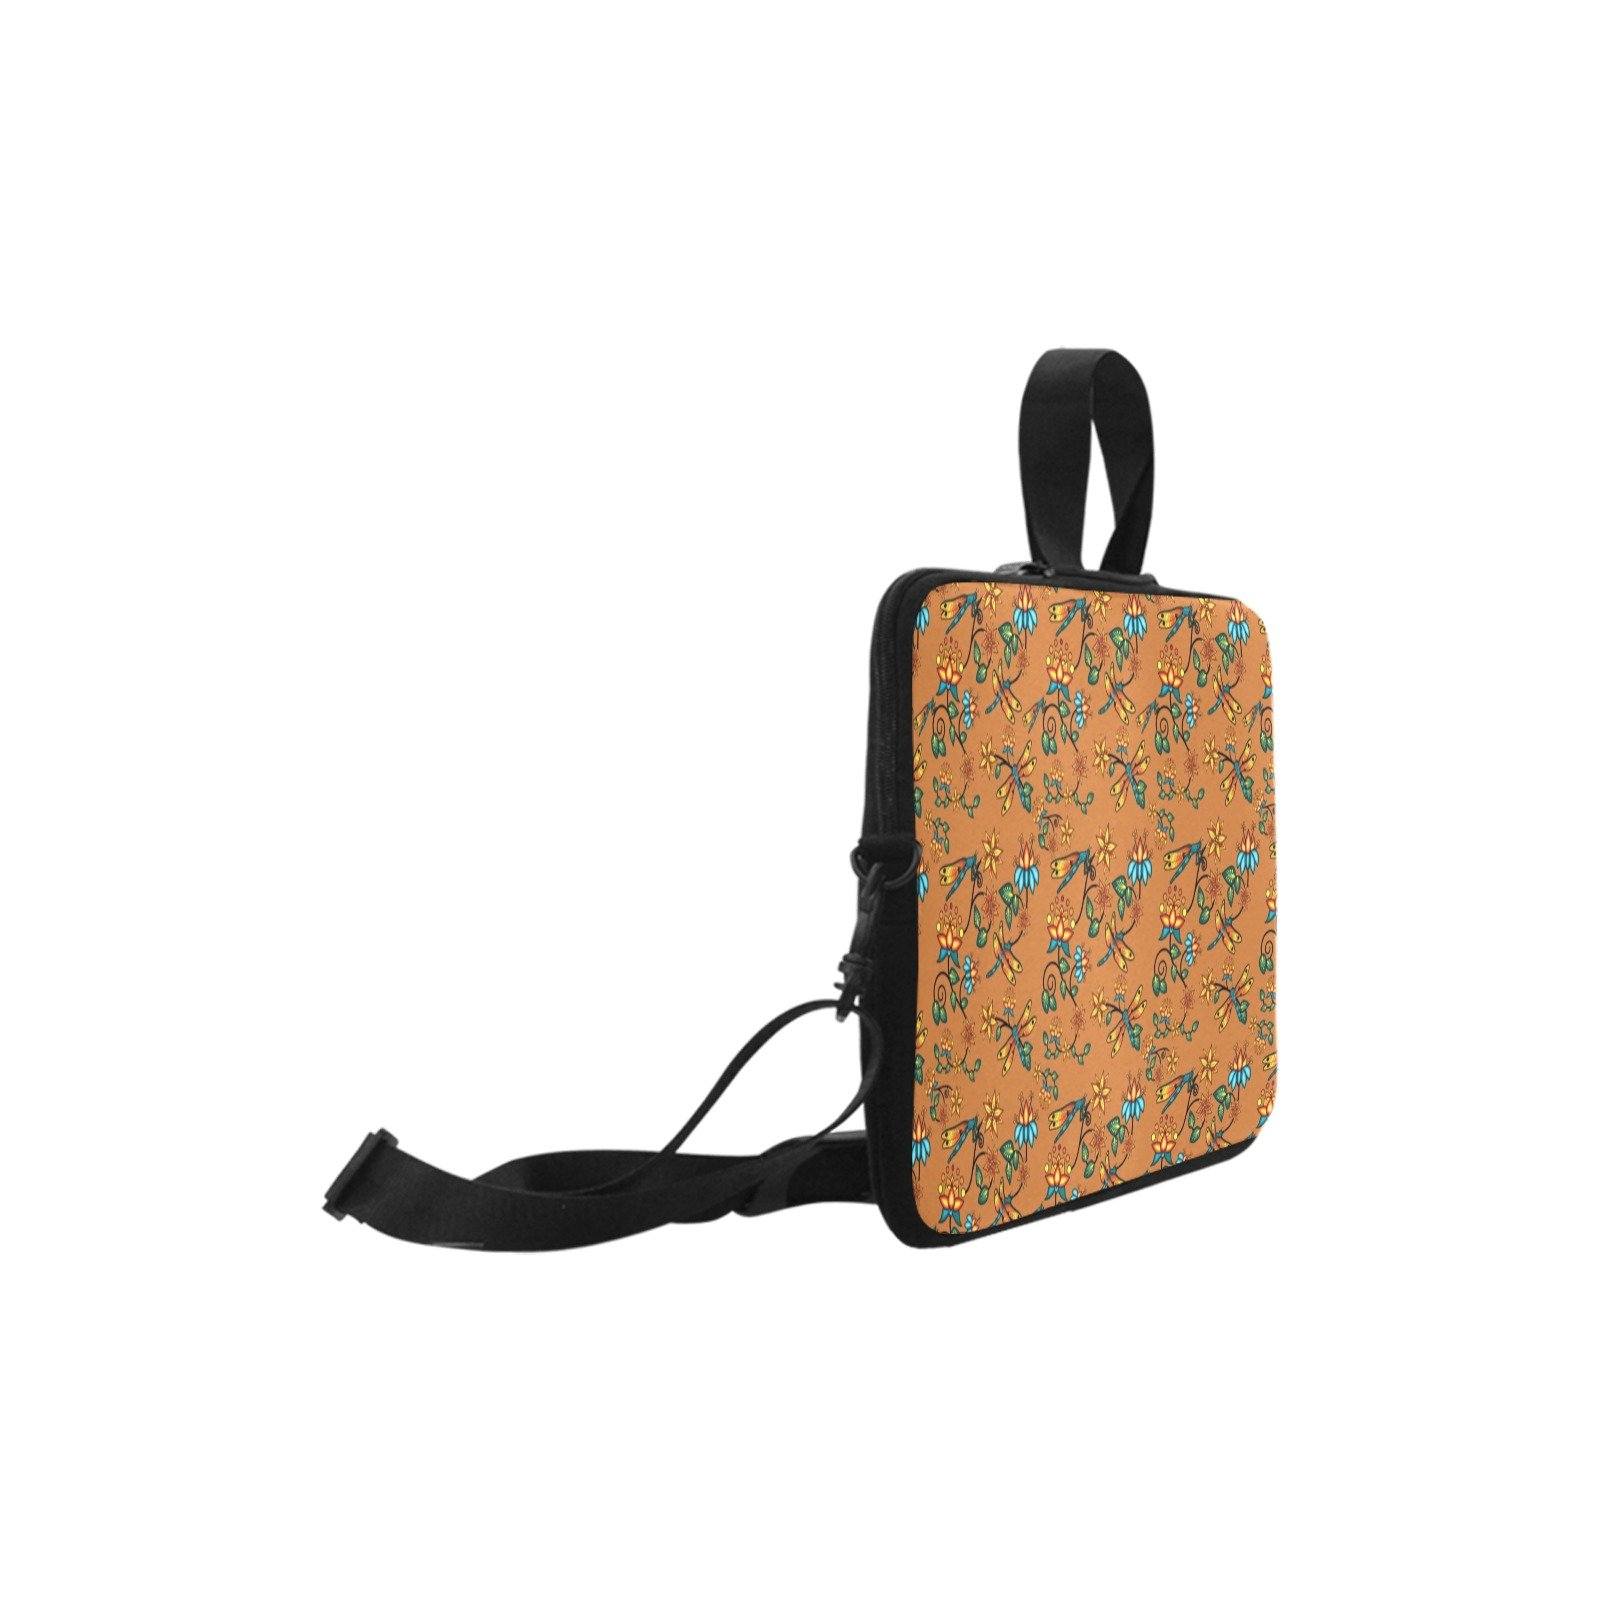 Dragon Lily Sierra Laptop Handbags 10" bag e-joyer 